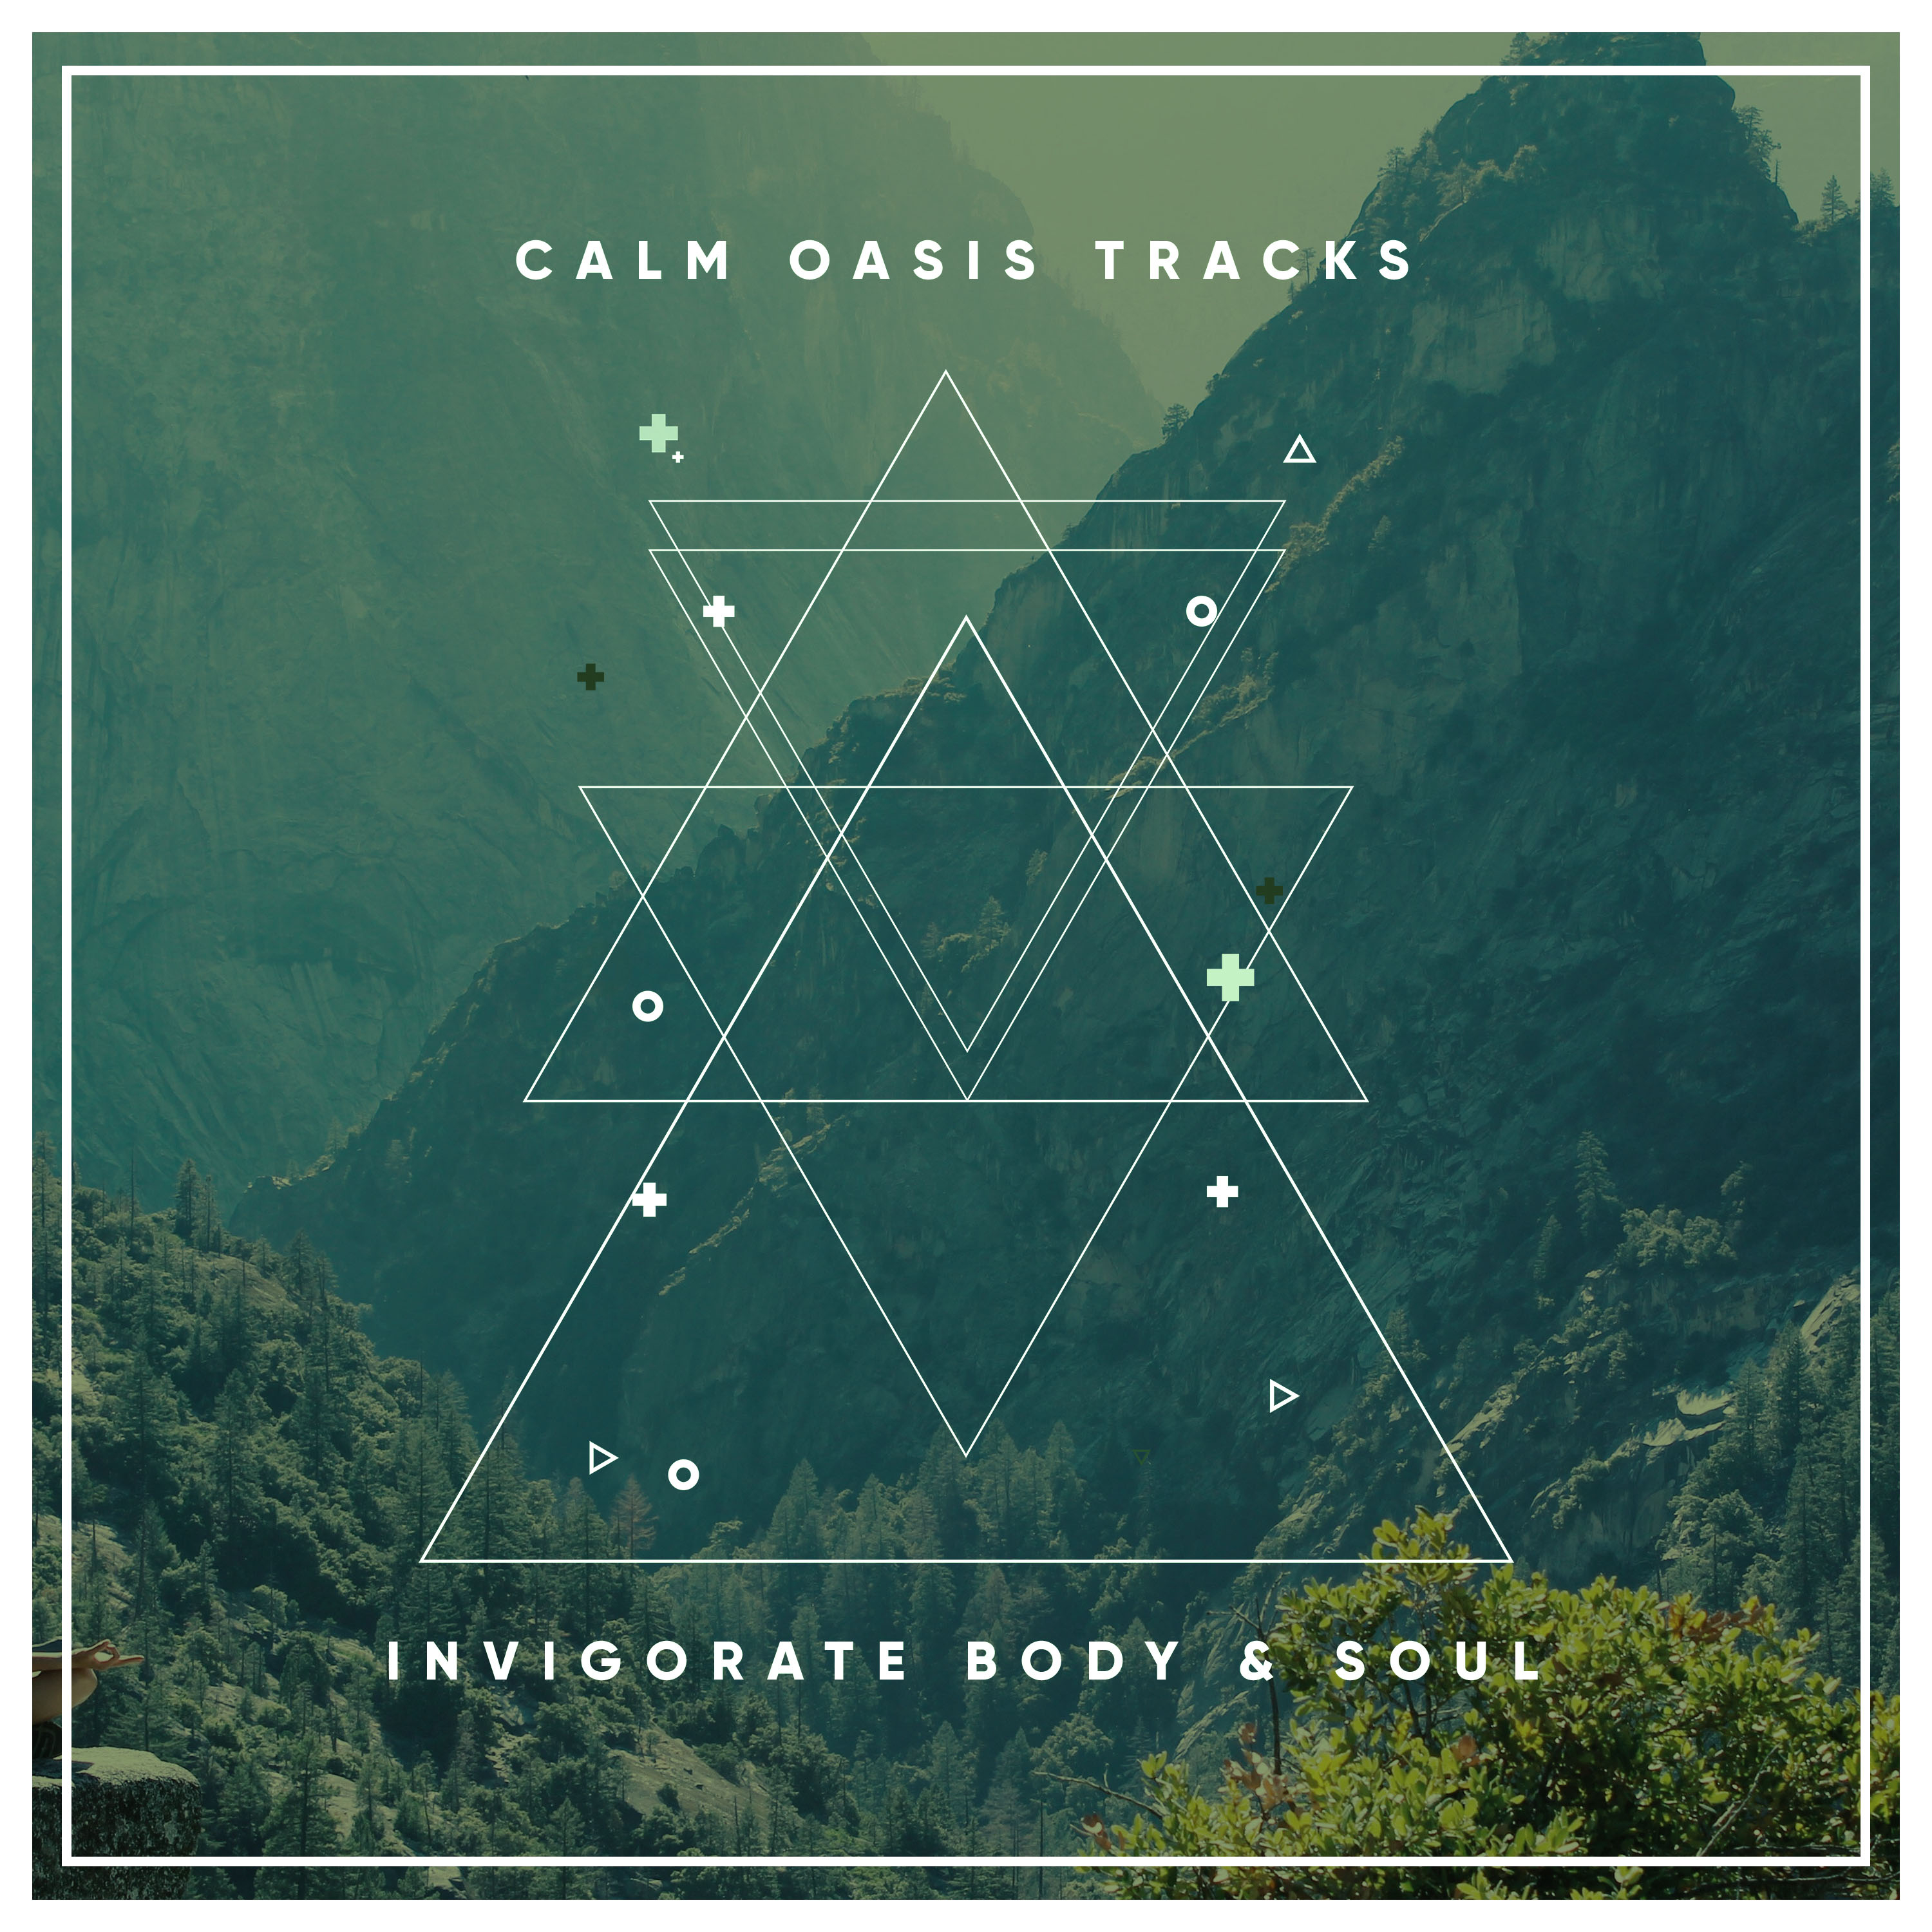 18 Zen Noises for Practicing Calm